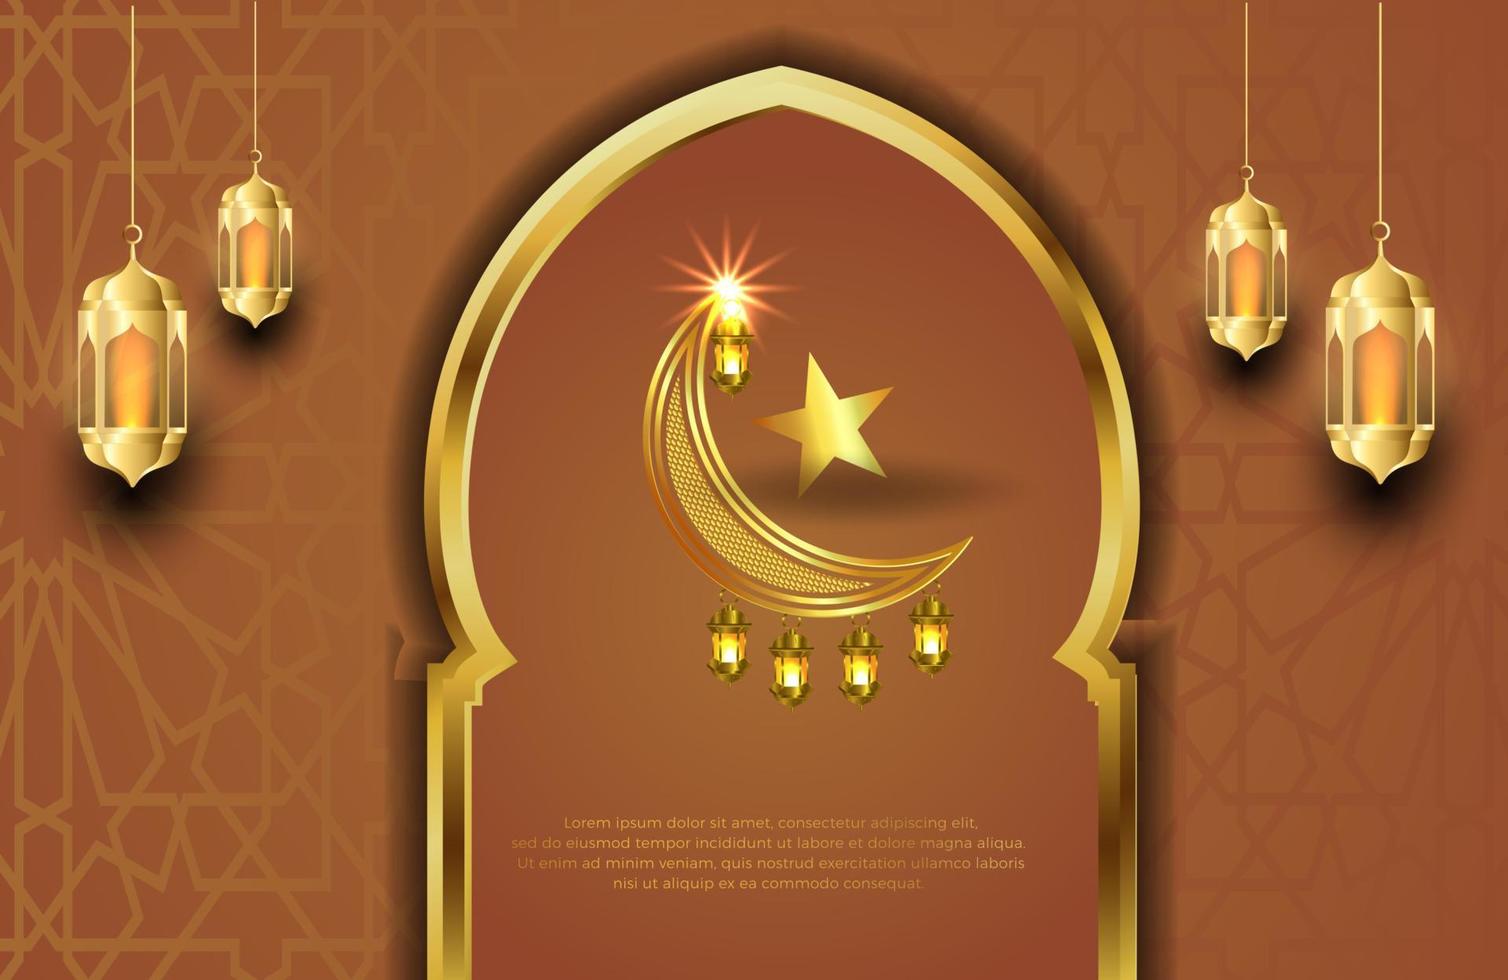 Eid mubarak background in luxury style Vector illustration